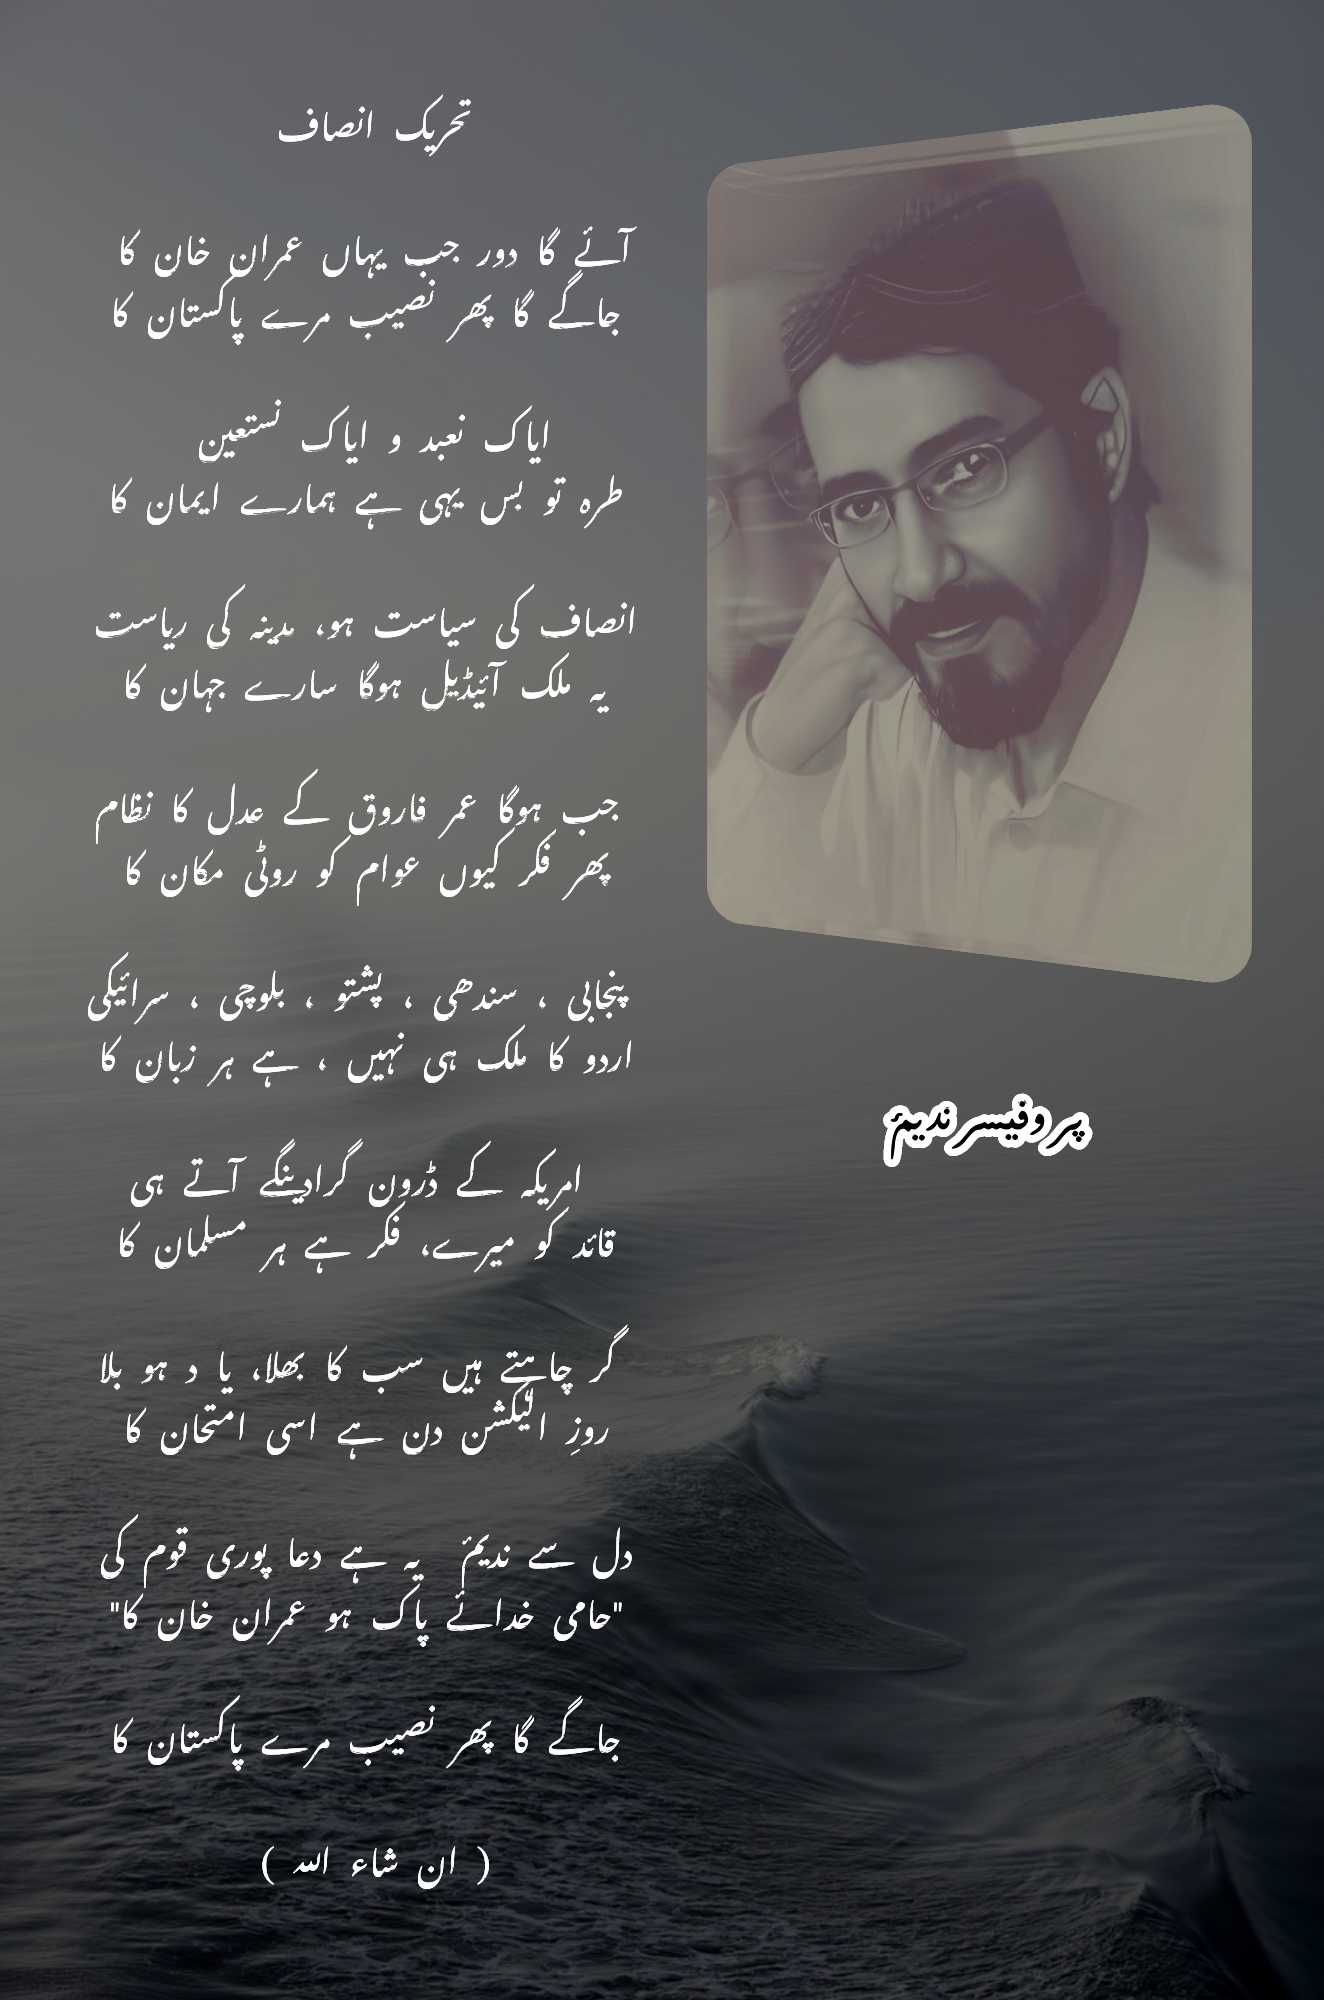 Tehreeke Insaf: Poetry by Professor Nadeem dedicated to Imran Khan's image